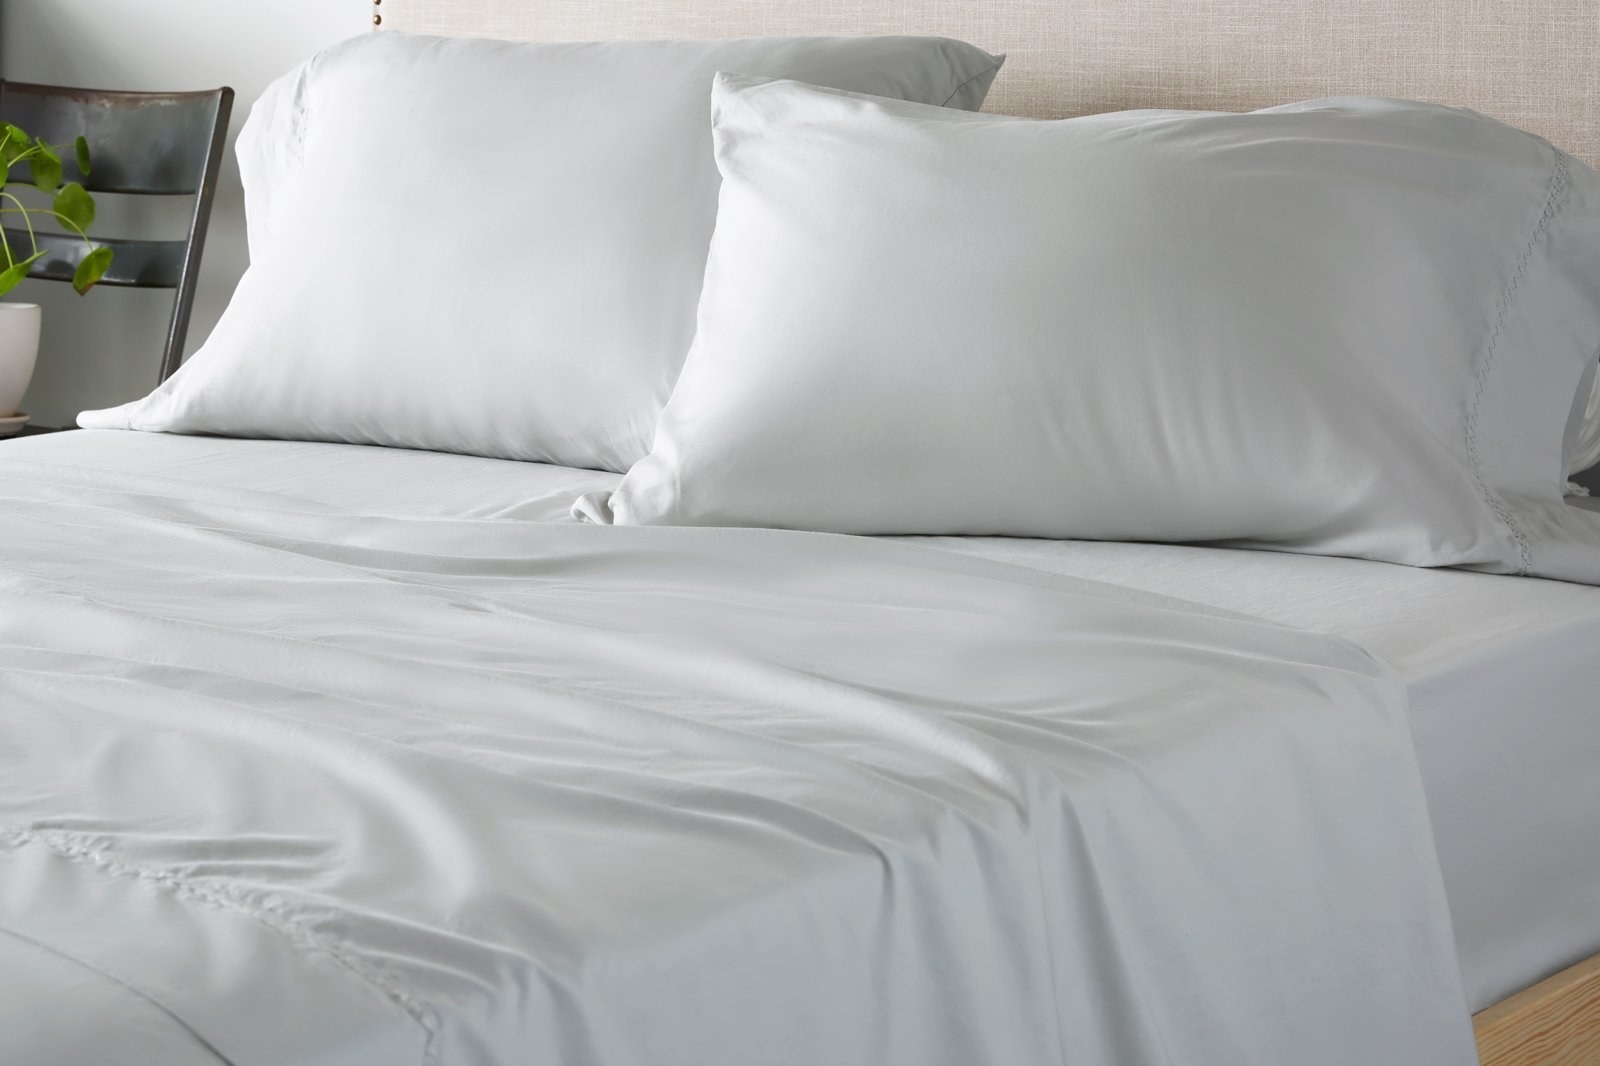 grey satin-like sheets and pillowcases